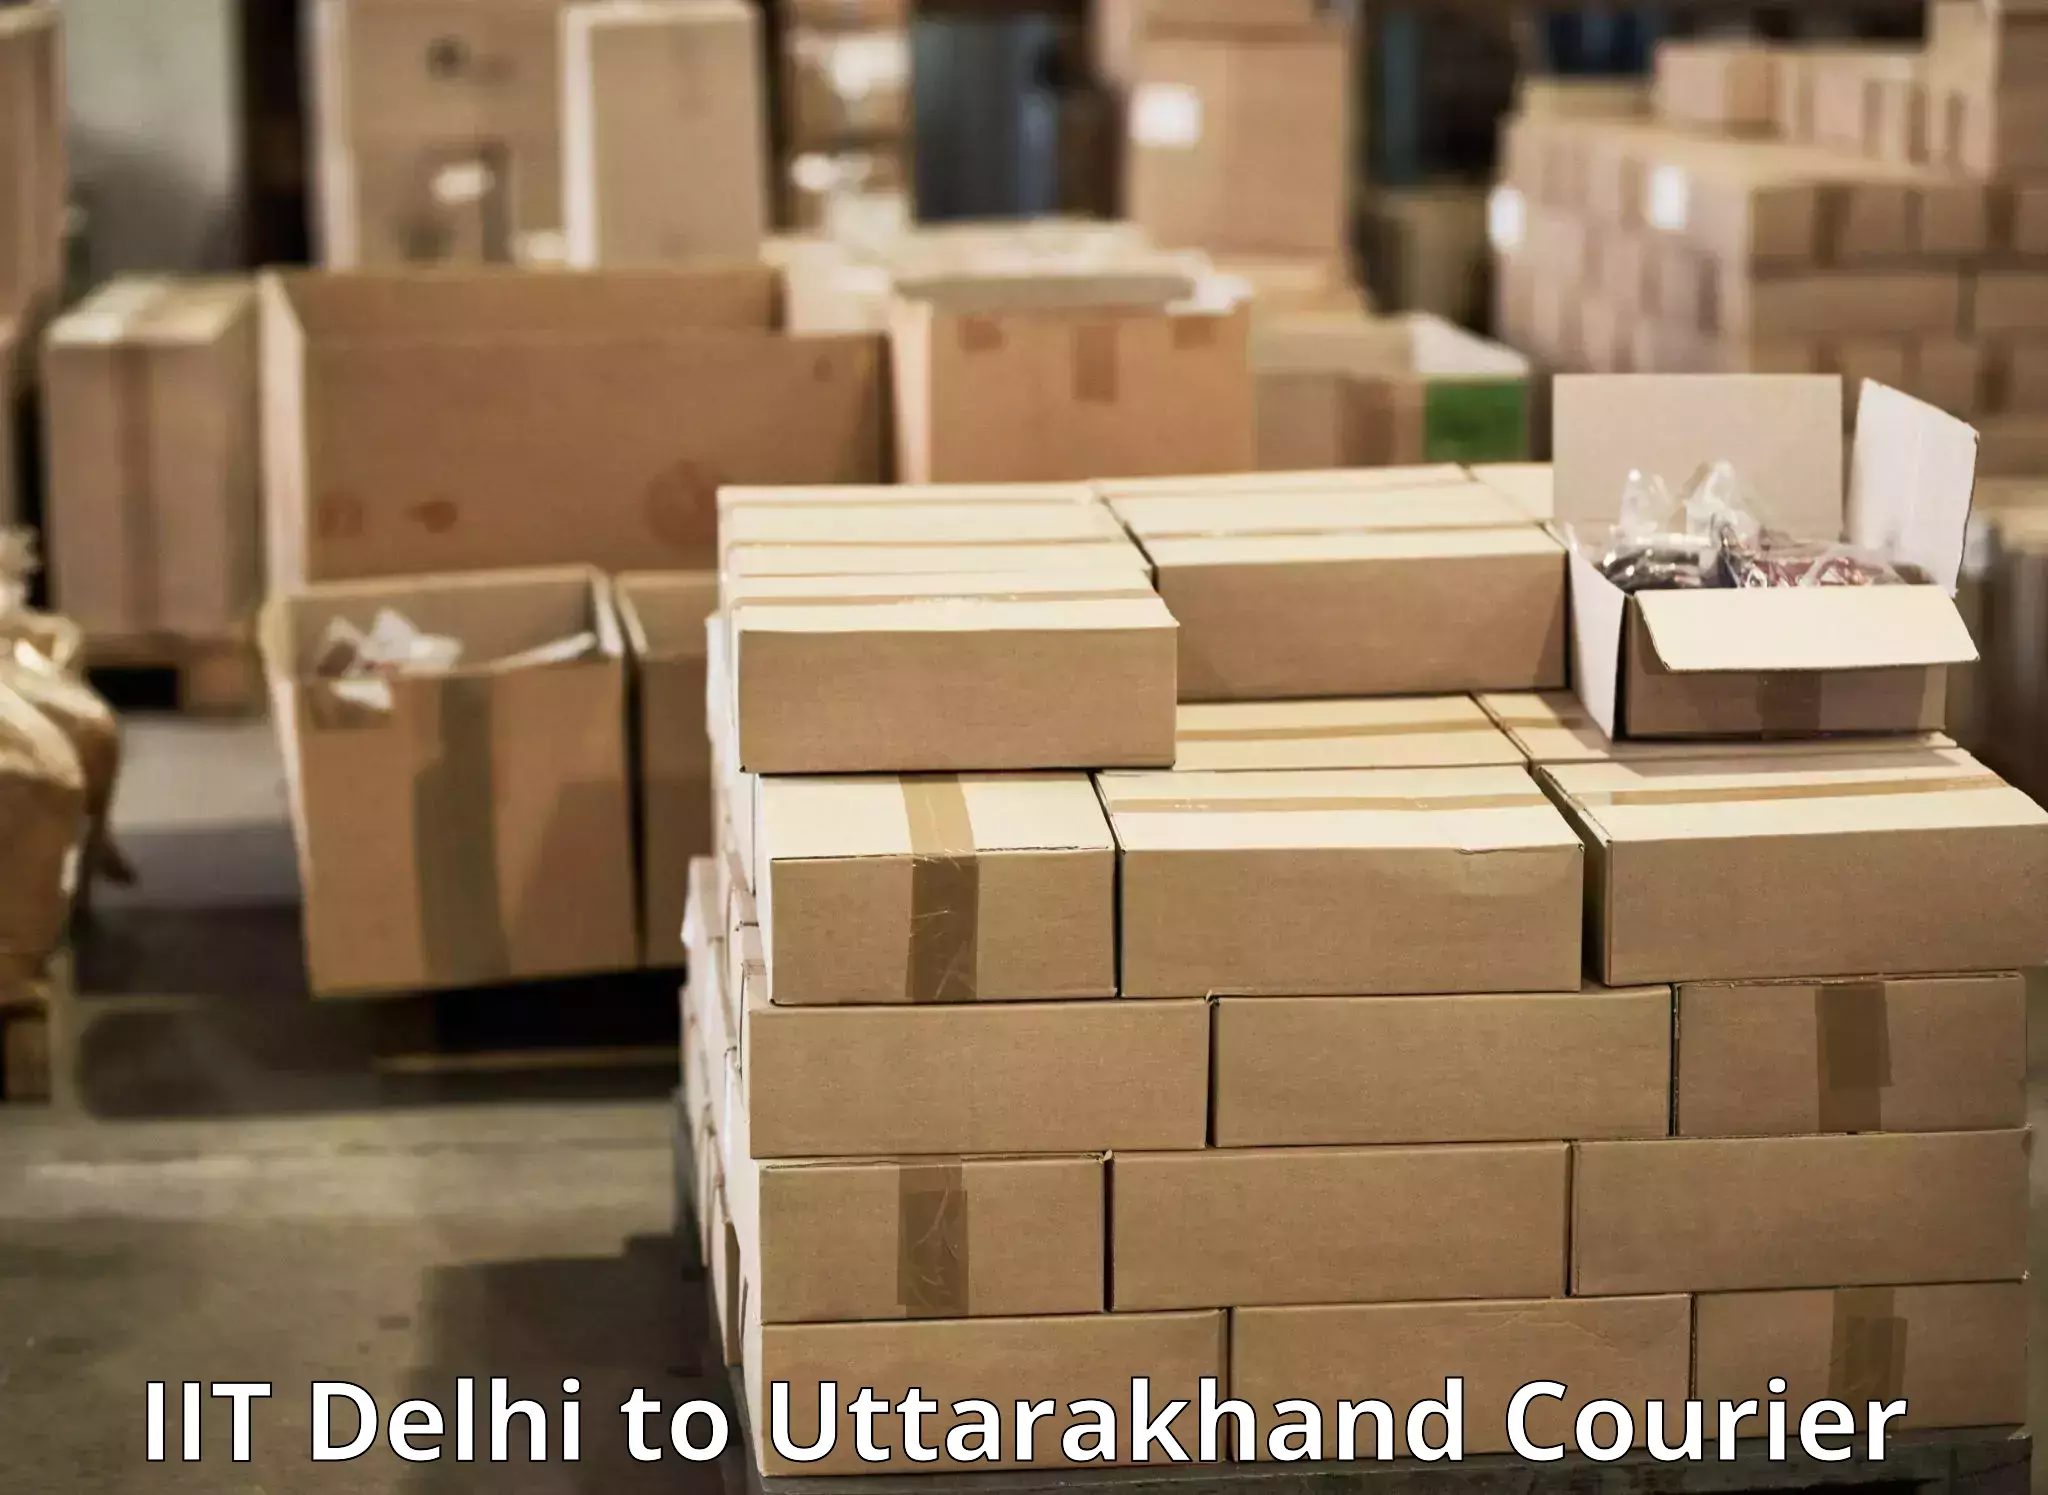 Door-to-door freight service IIT Delhi to Uttarakhand